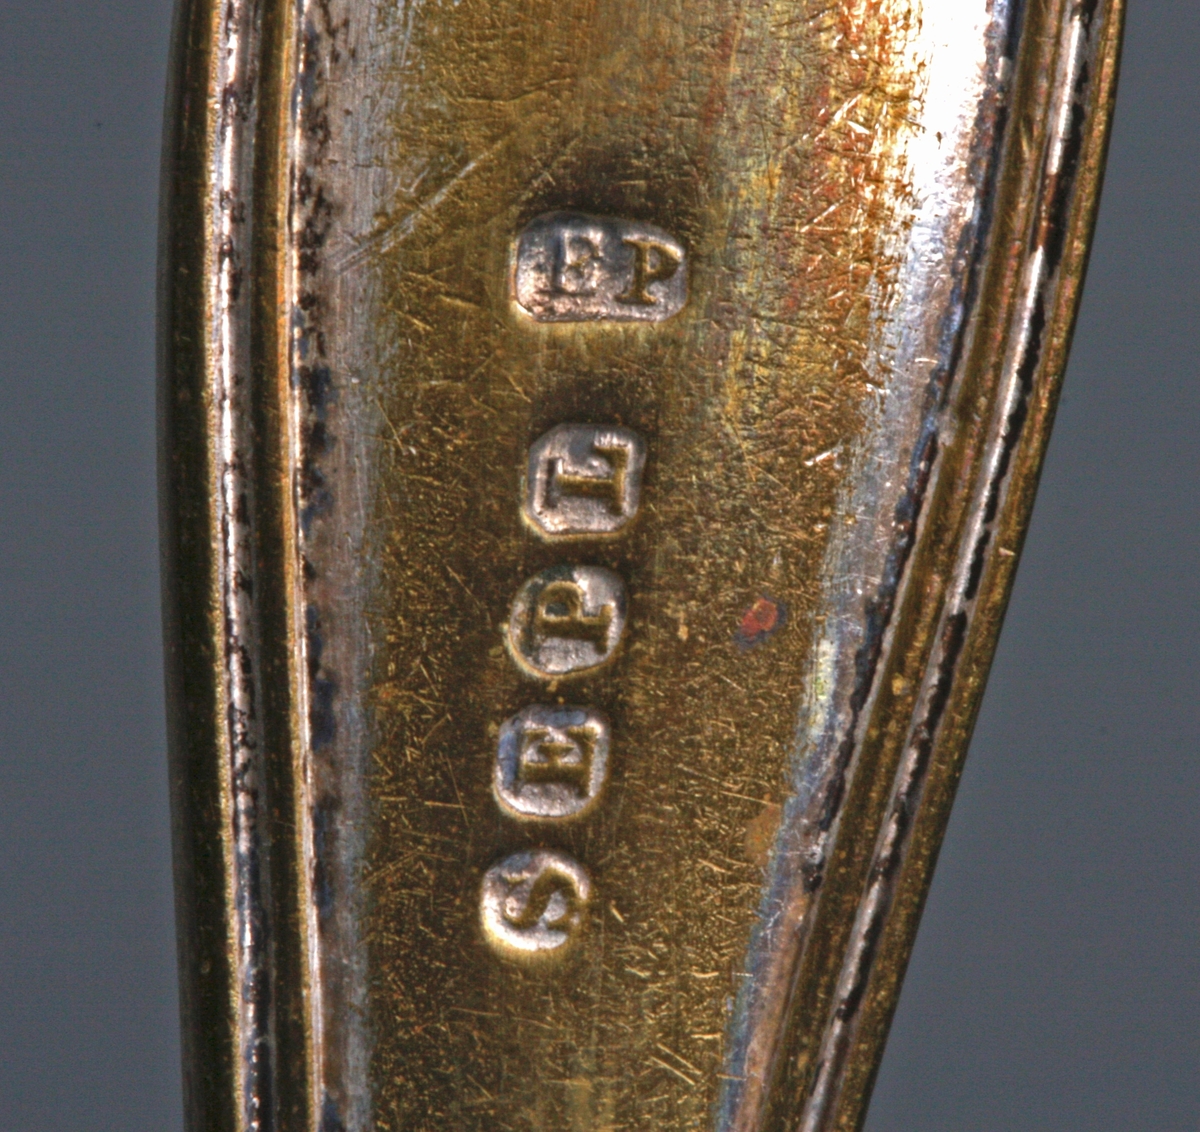 Stor gaffel med fire tinner. Dobbelkant rundt skaftet. 5 stempler på baksiden (S.E.P.L..)